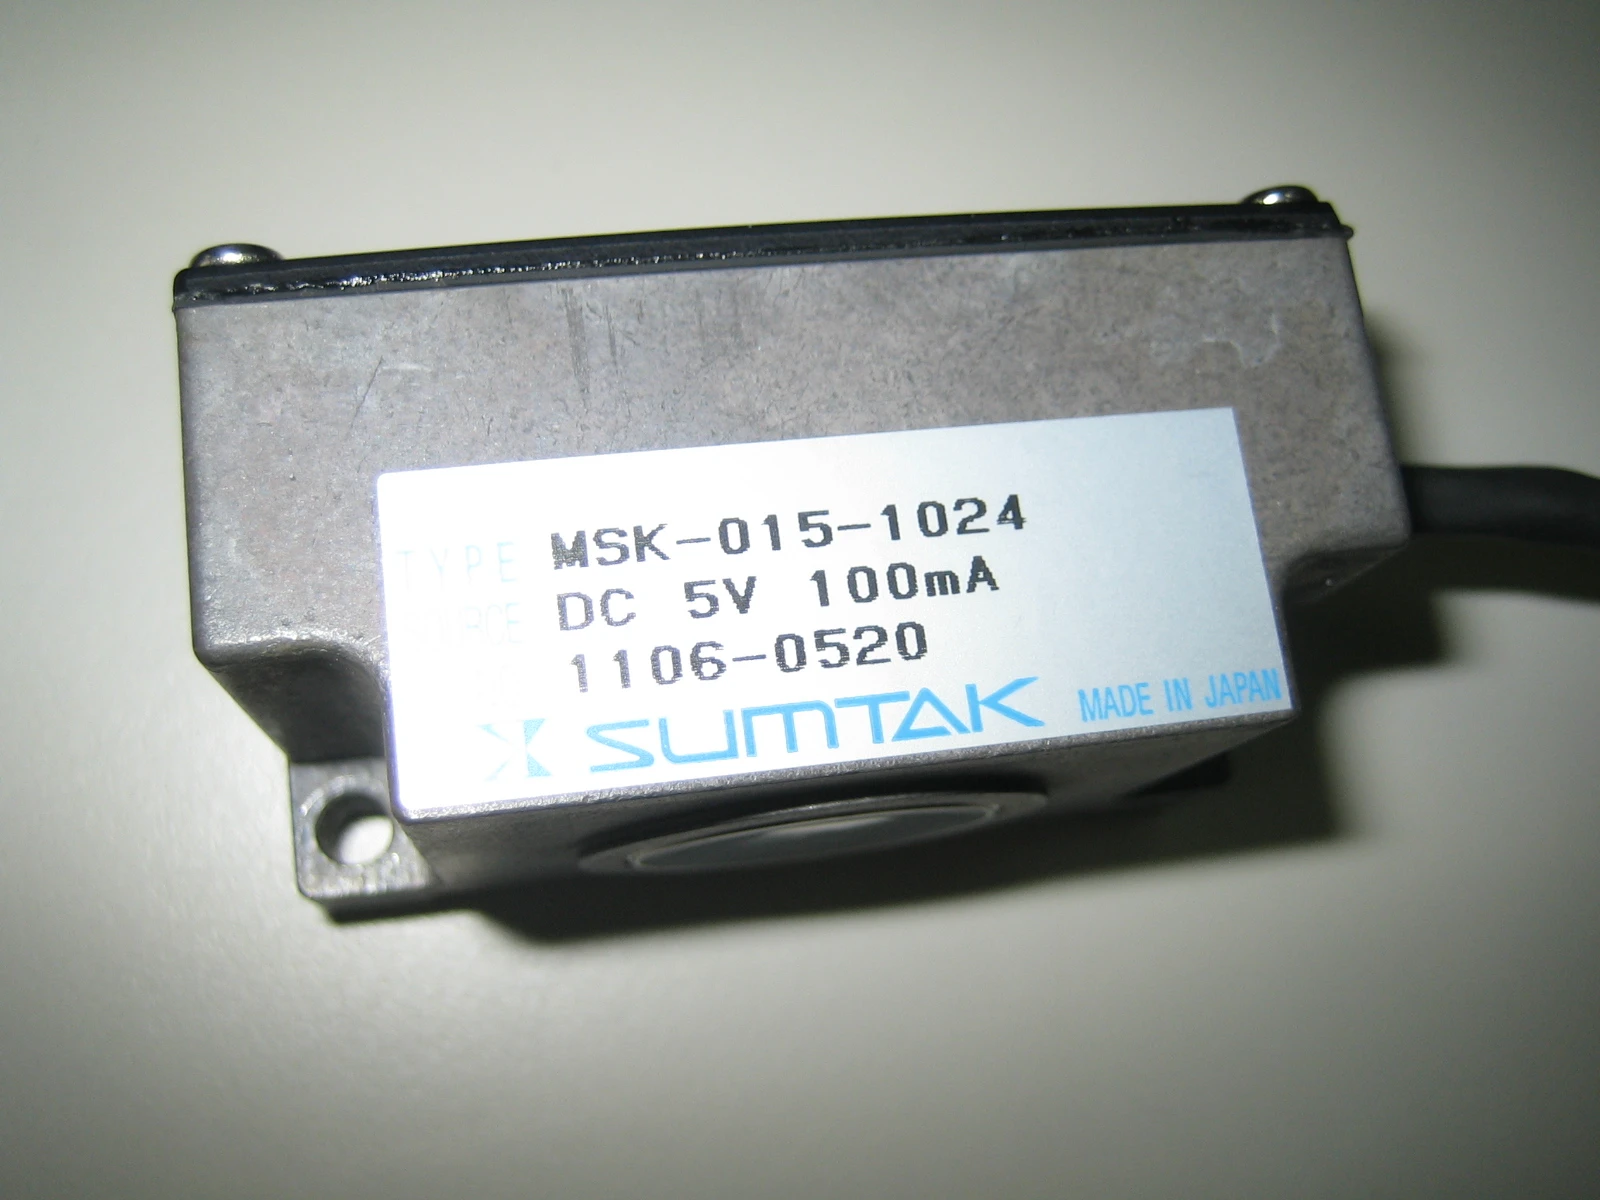 MSK-015-1024 SUMTAK 磁性編碼器